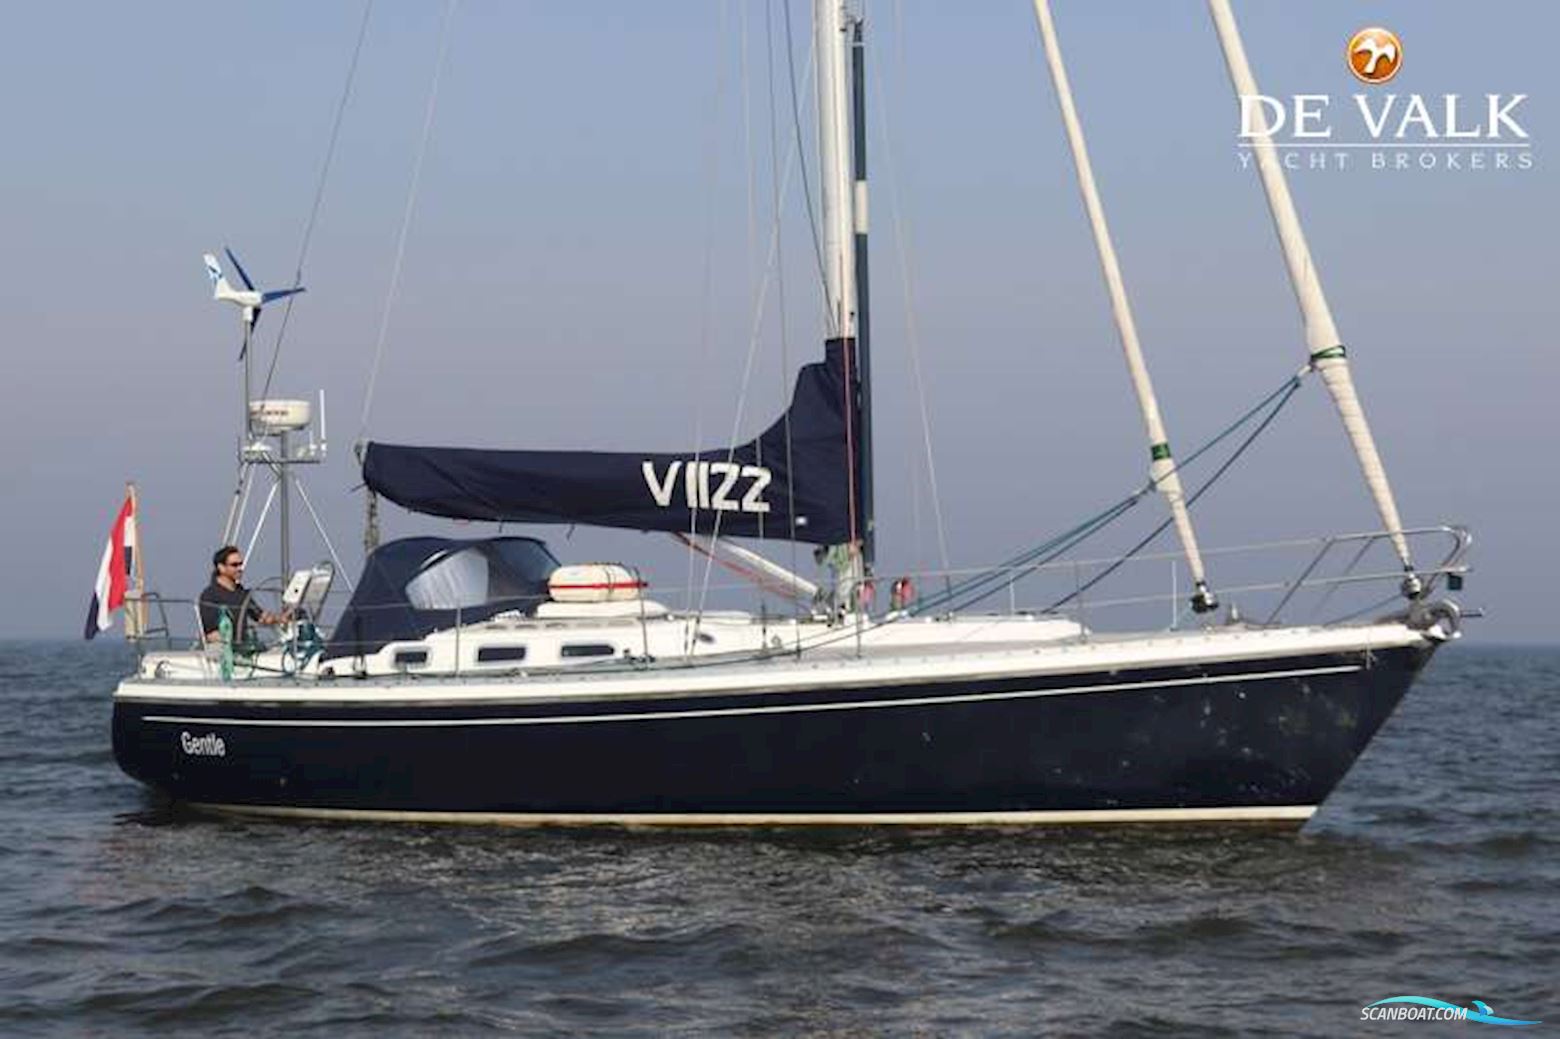 Victoire 1122 Segelbåt 2002, med Volvo Penta motor, Holland